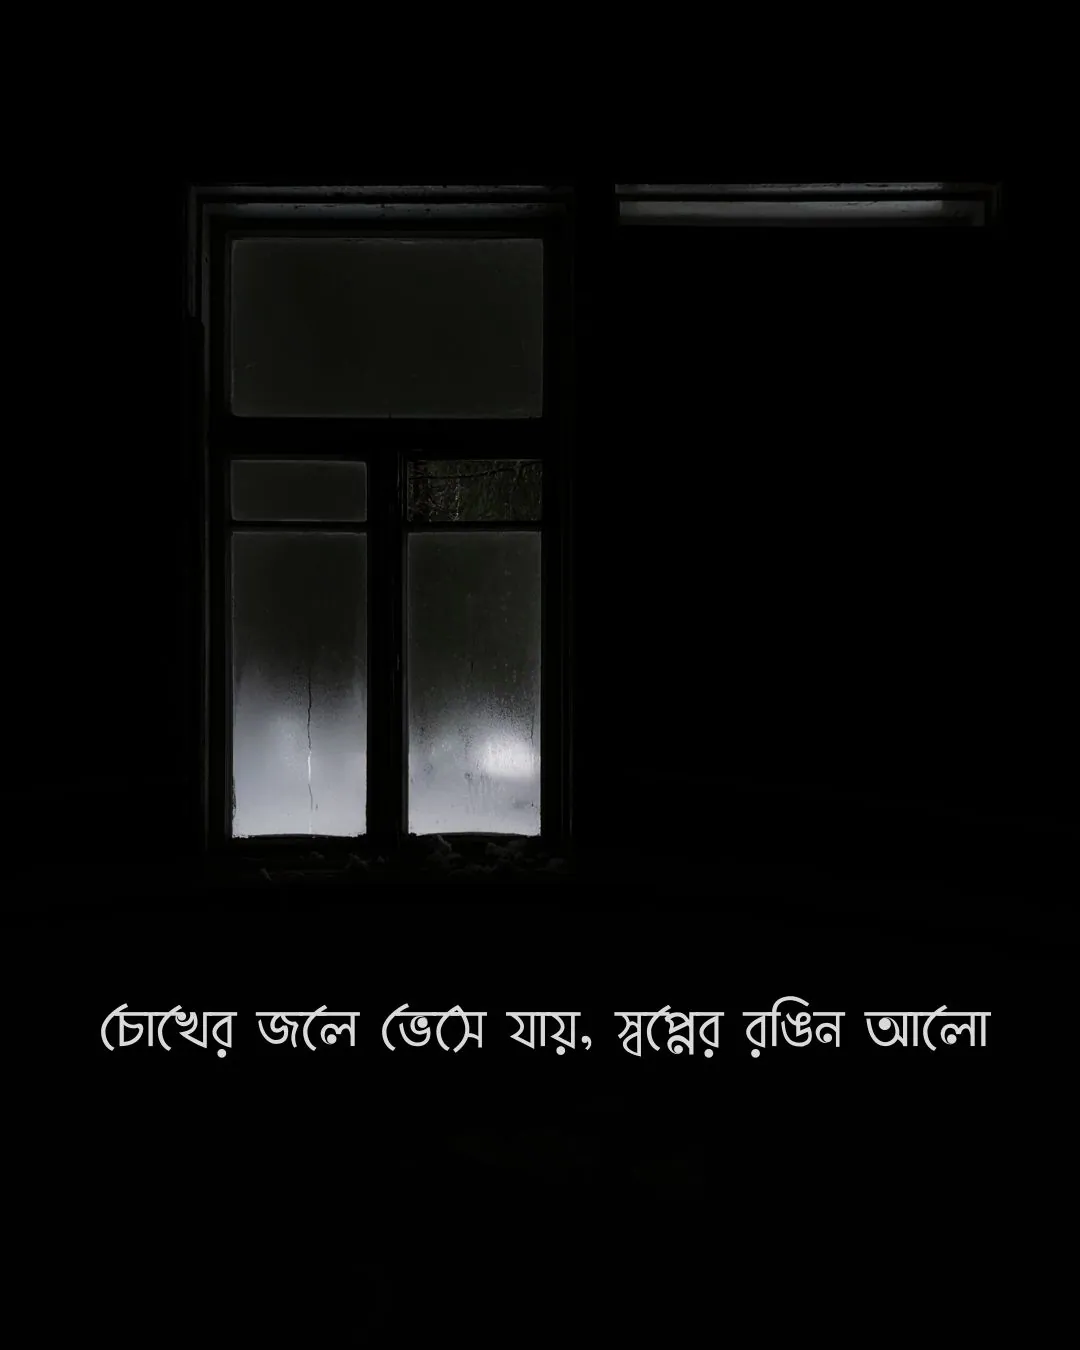 চোখের জলে ভেসে যায় স্বপ্নের রঙিন আলো - sadness pic bangla